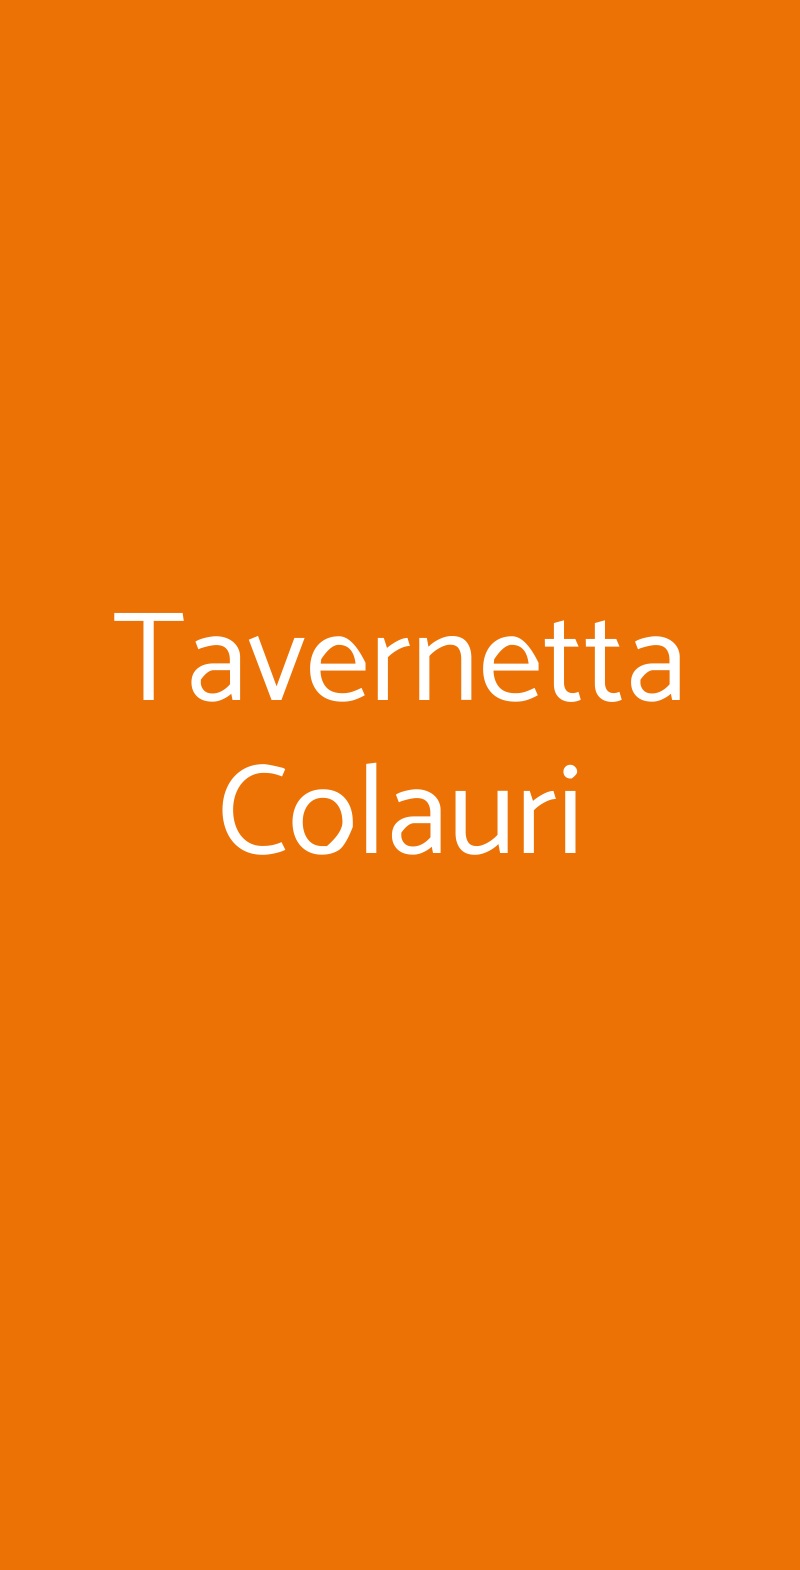 Tavernetta Colauri Napoli menù 1 pagina